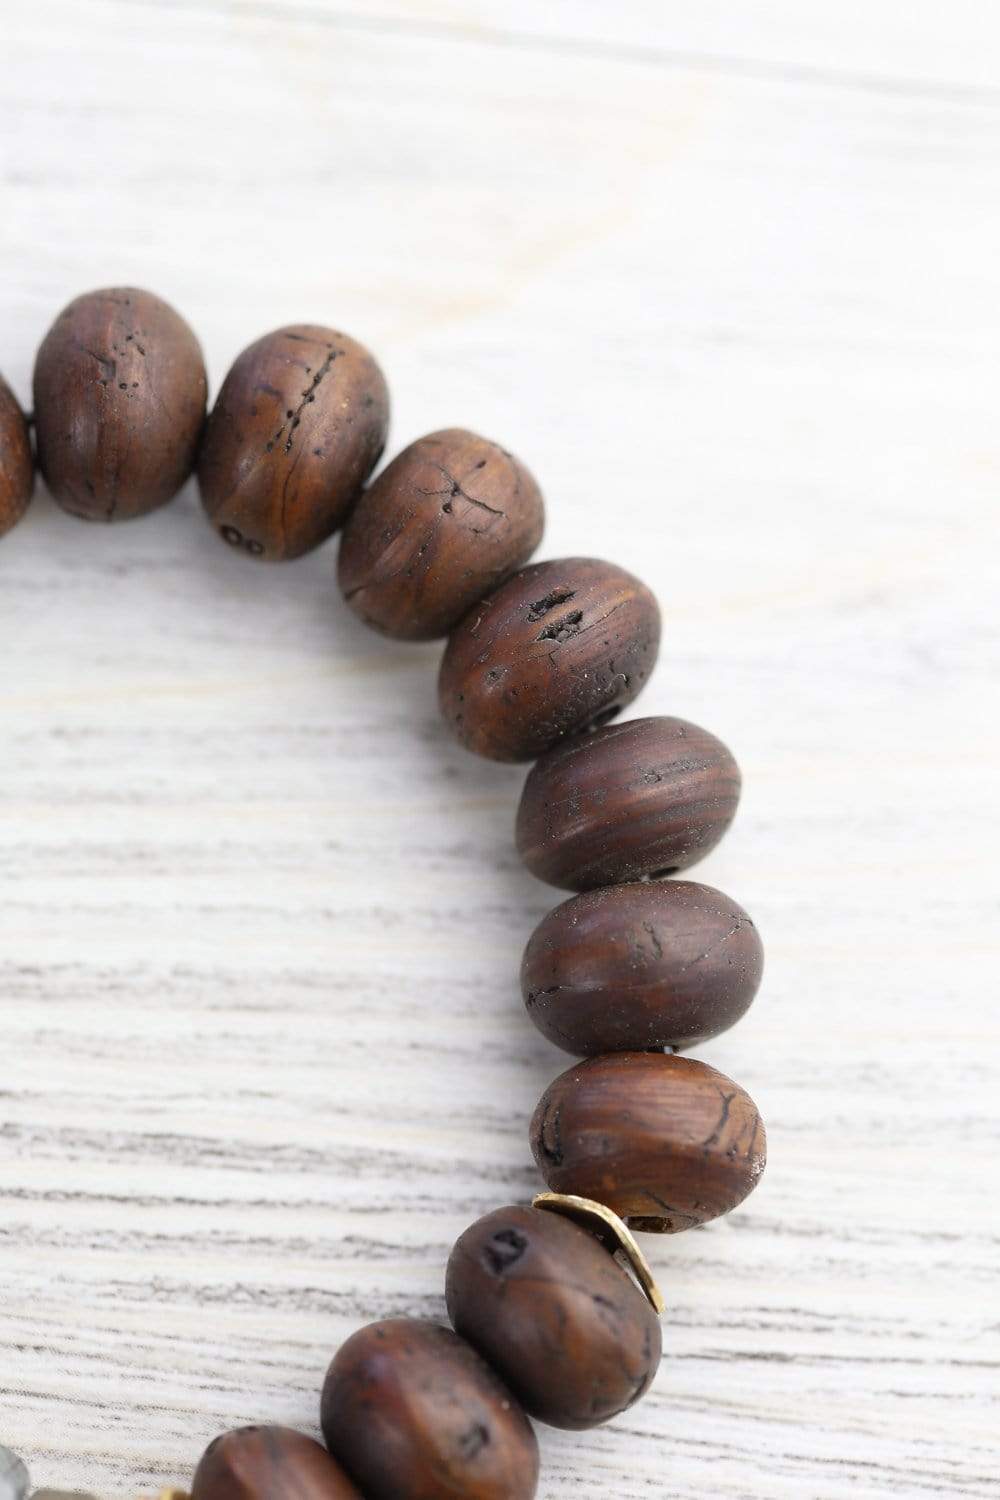 Mala Bracelet - Bodhi Seed with Carnelian & Turquoise – Aromas